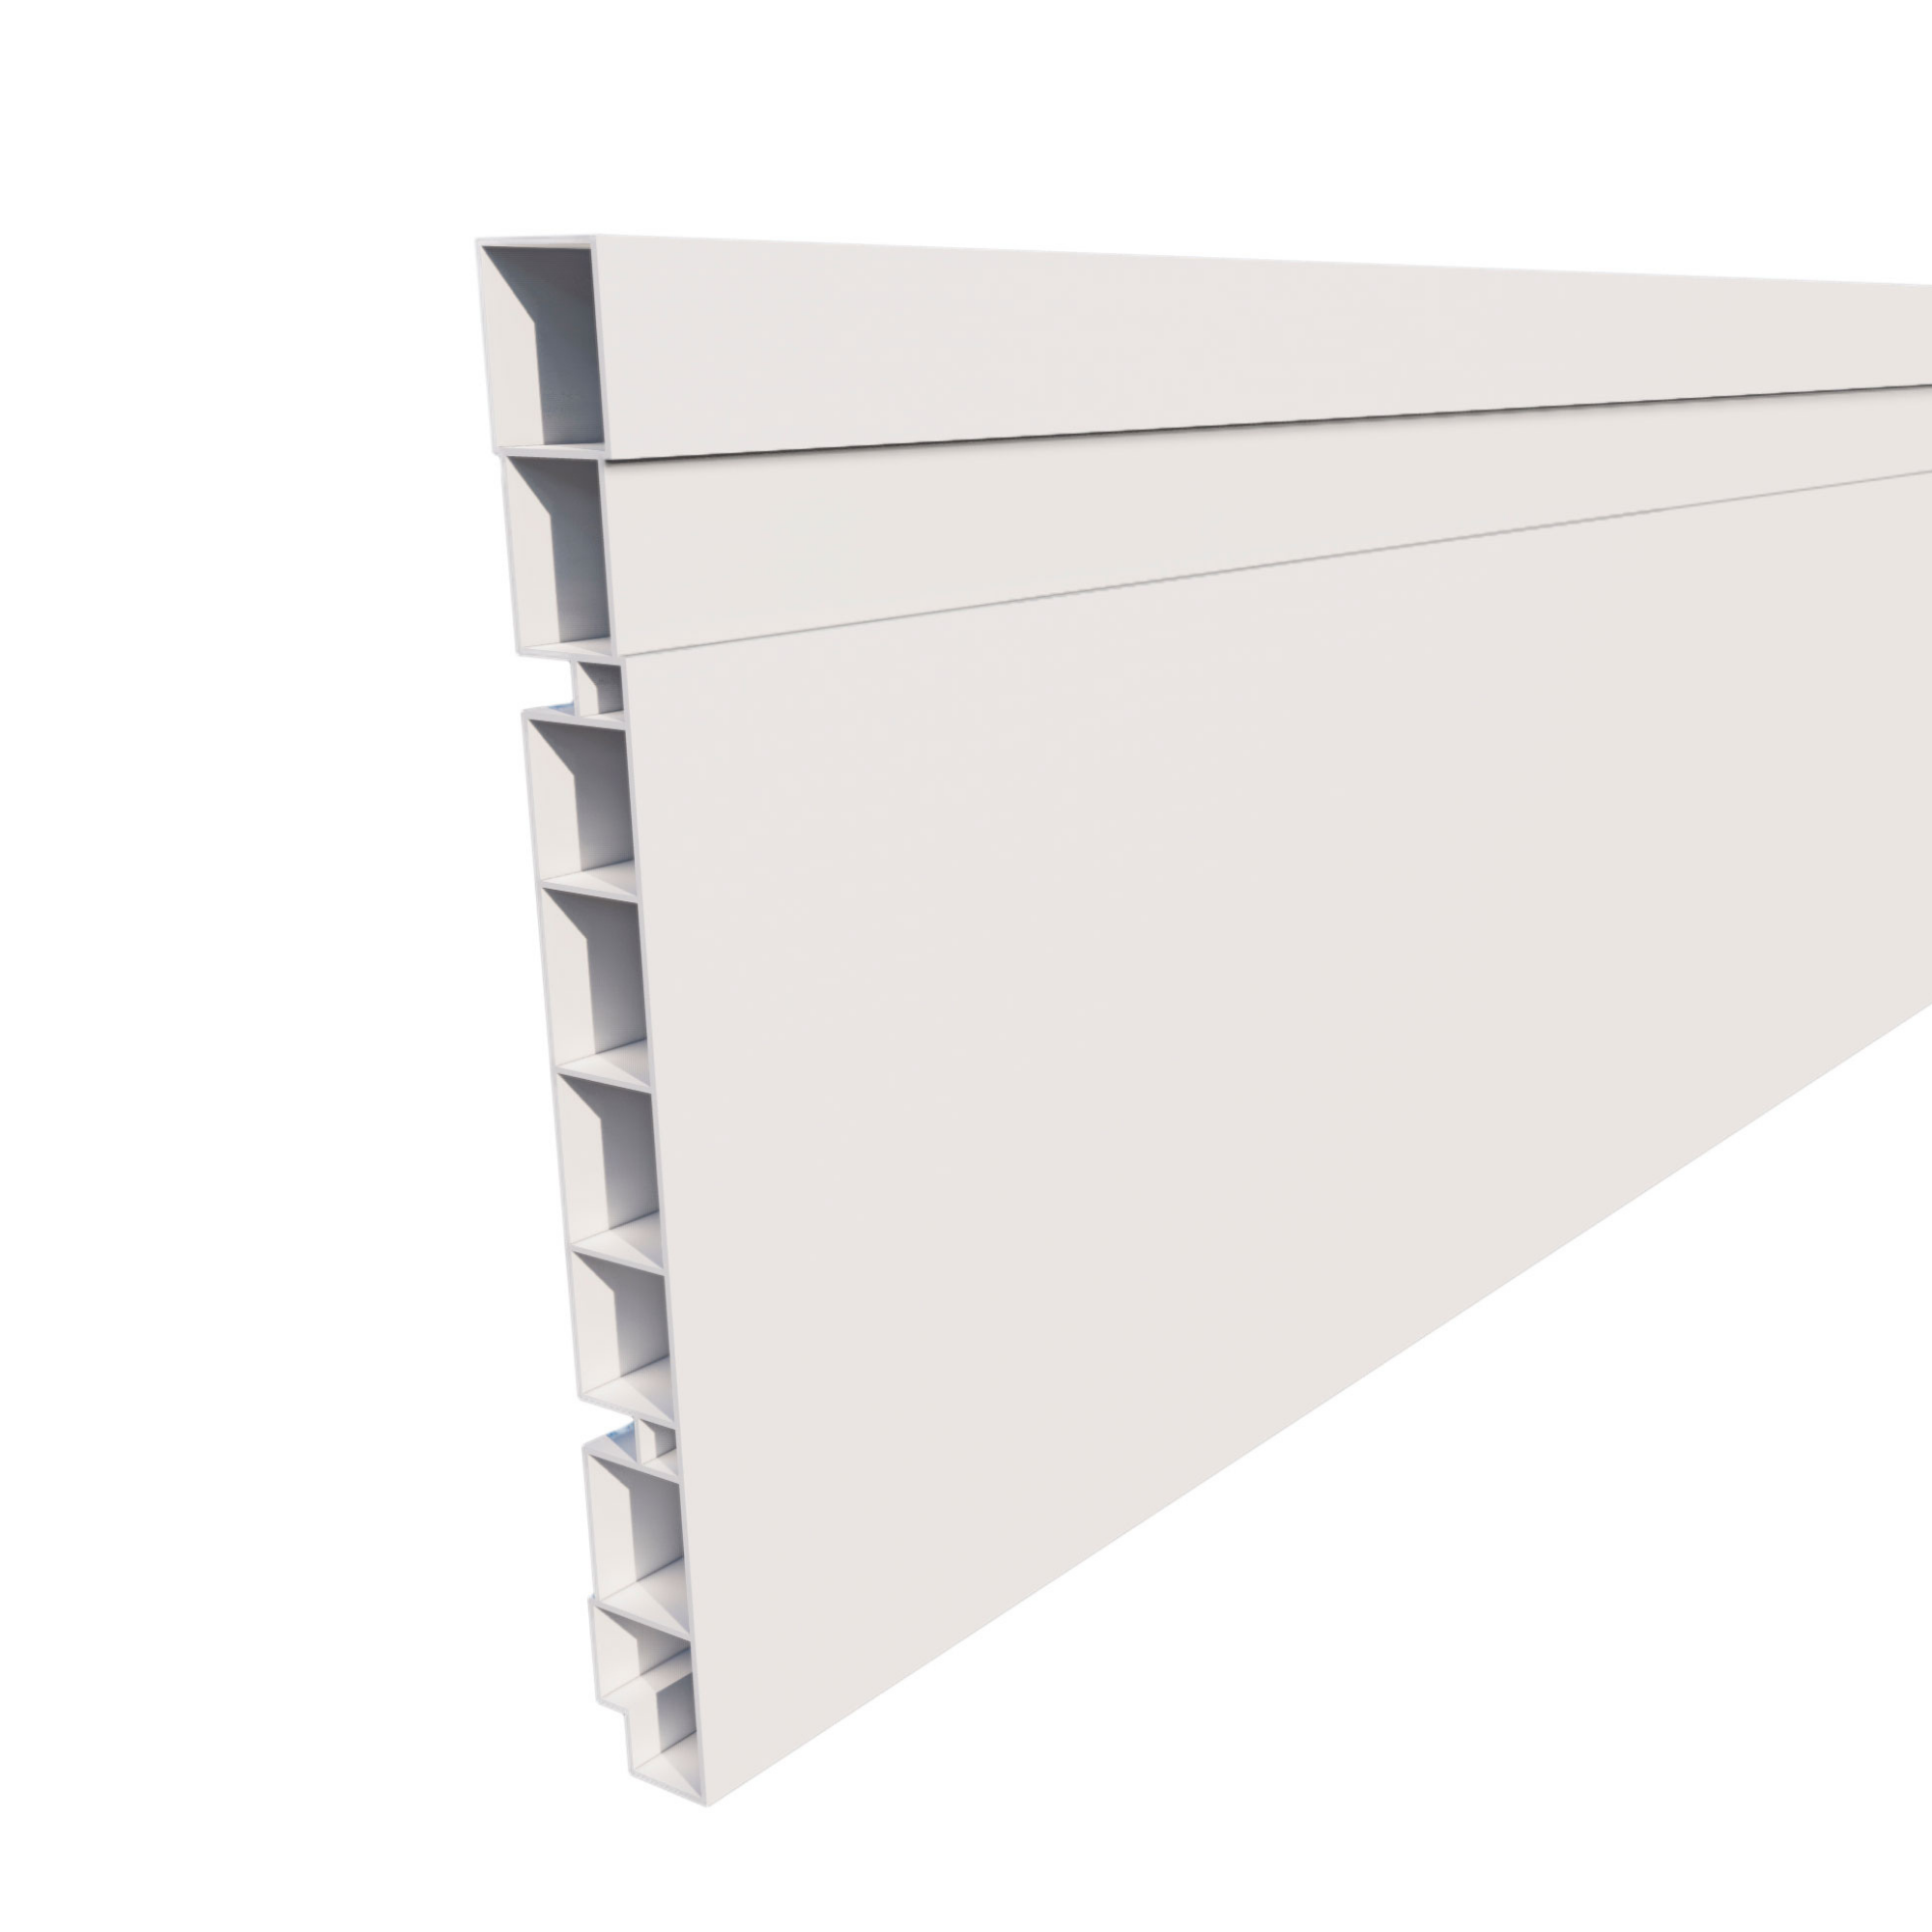 Kit 10 barras Rodapé de PVC 15 cm altura Frisado barra com 2,40M Branco